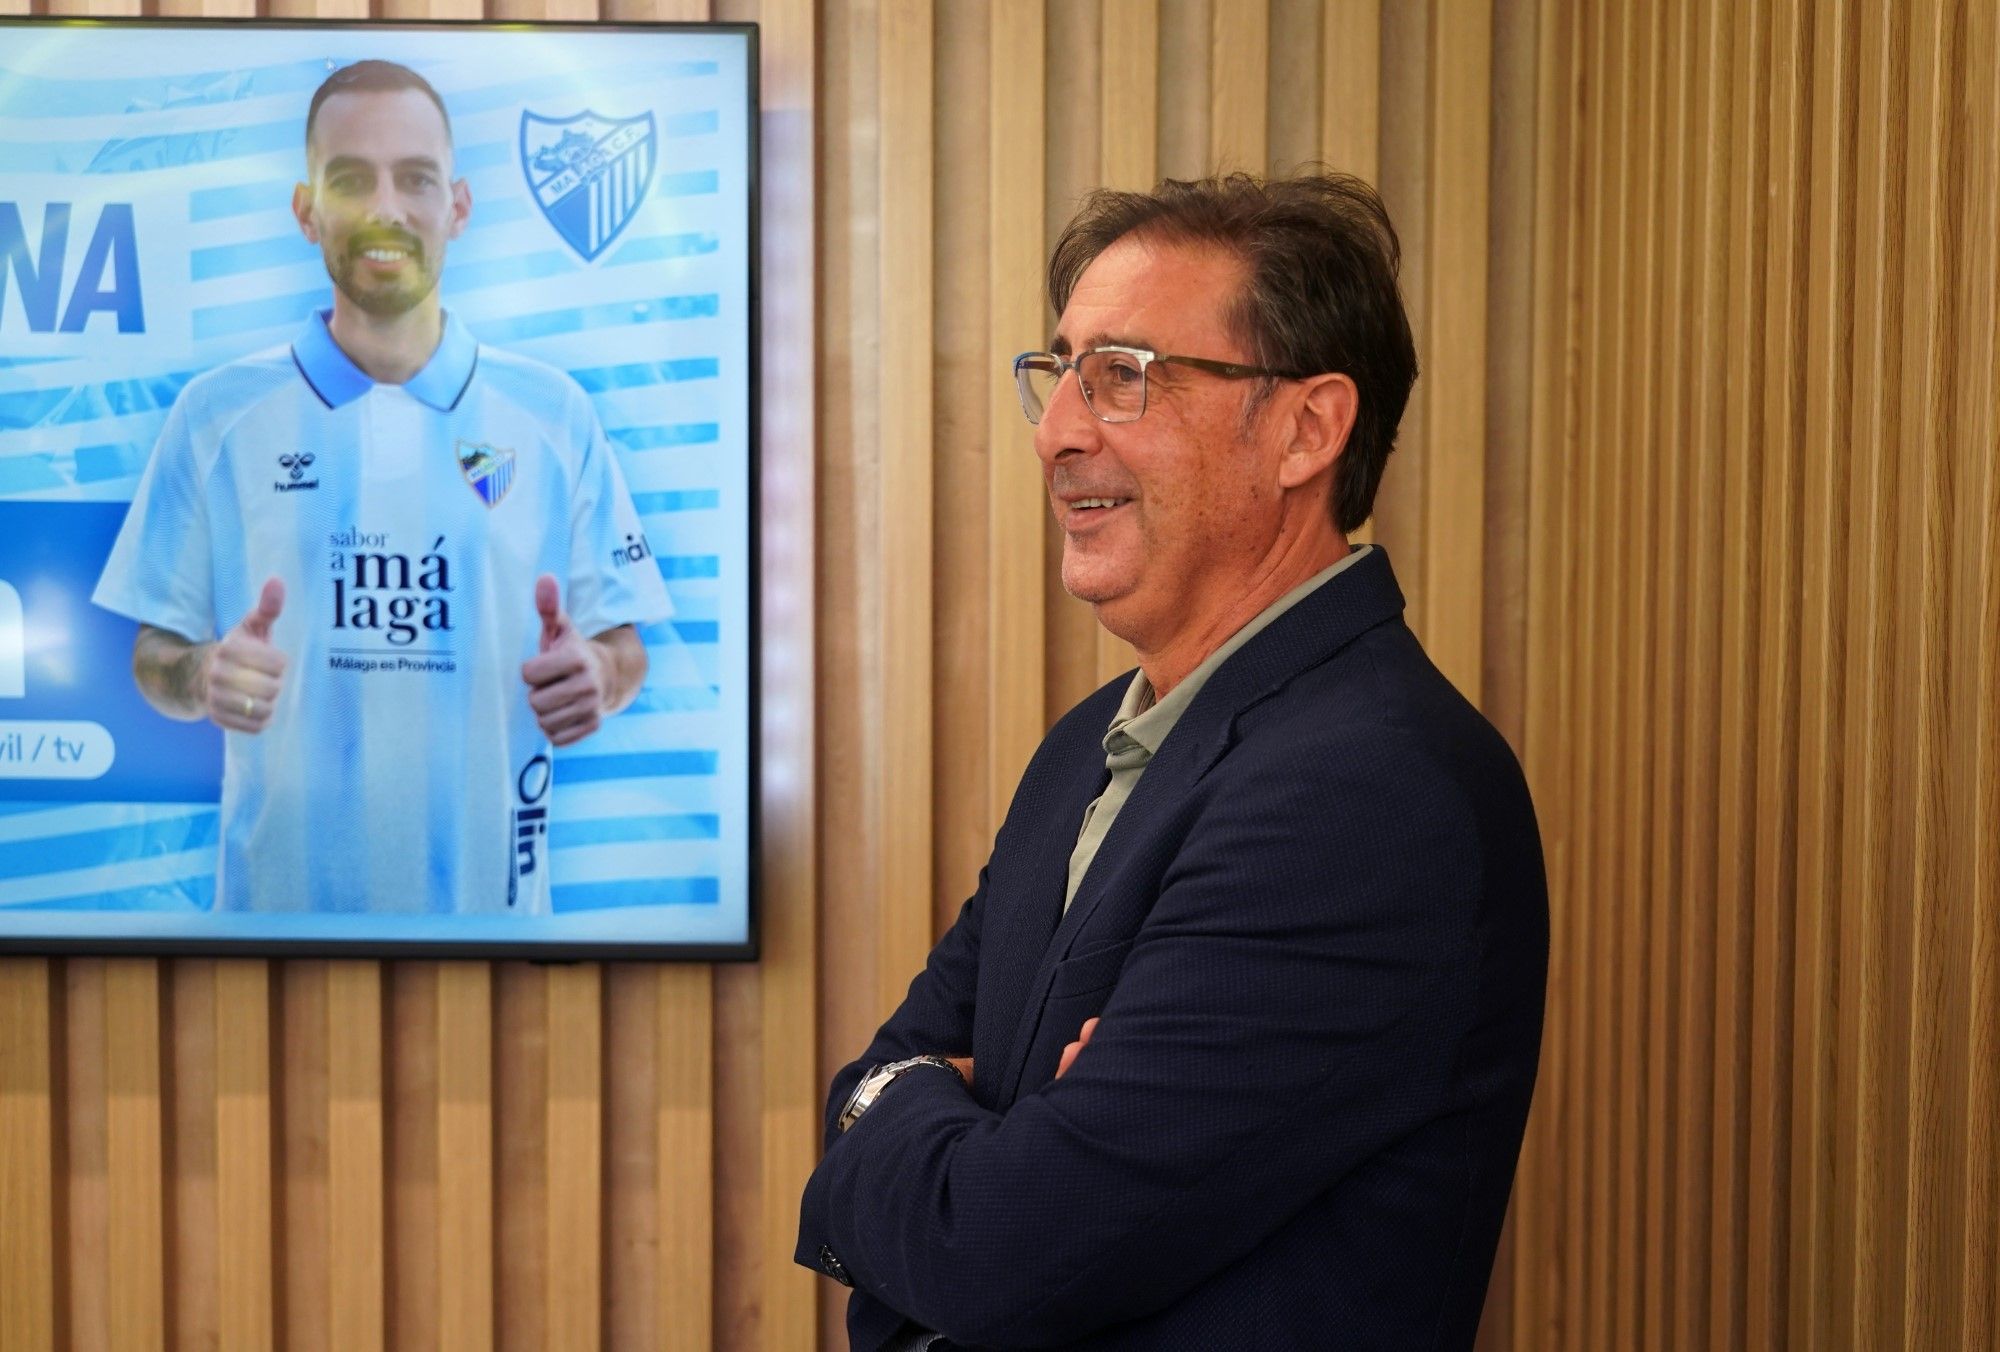 El Málaga CF presenta a Manu Molina, nuevo jugador